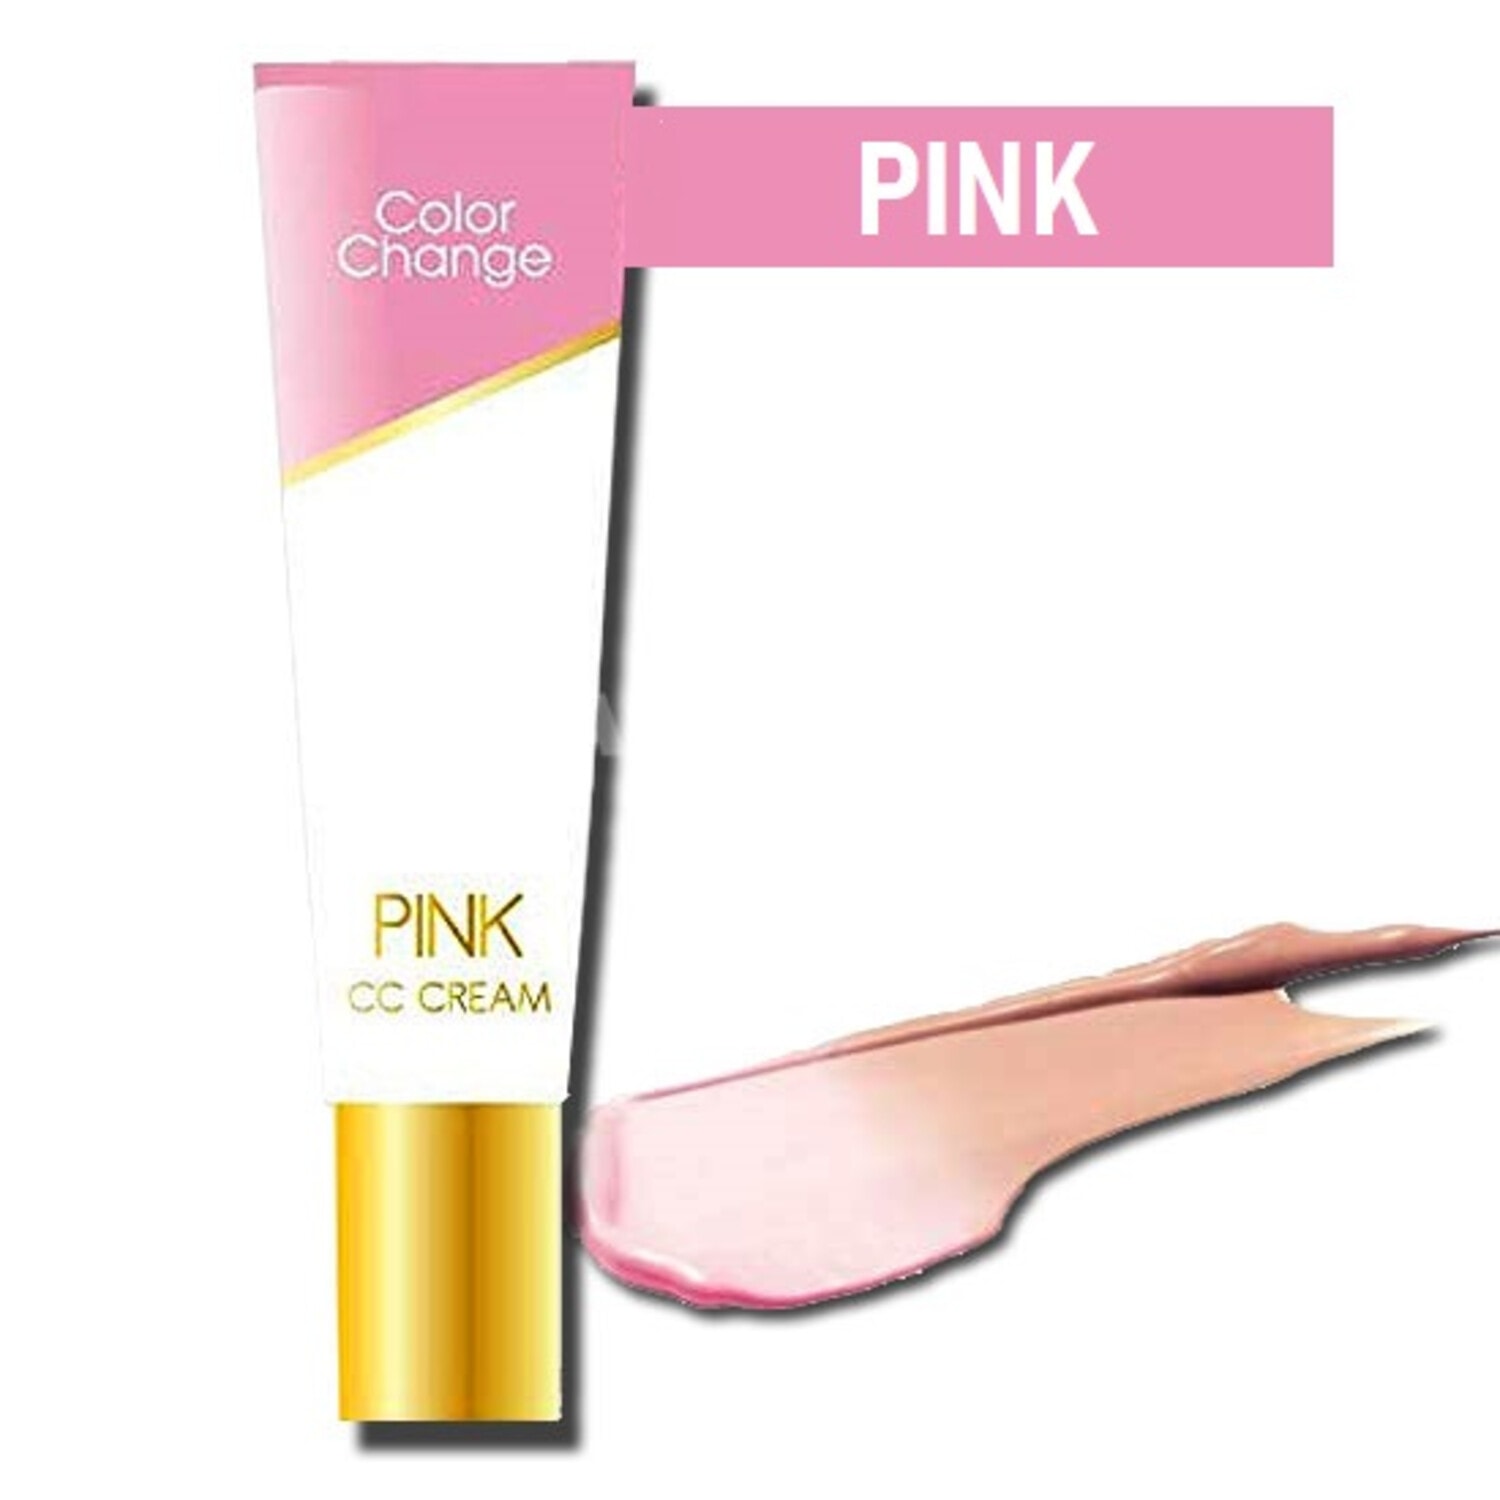 Тональный СС-крем Pure Smile Color Change c цветными микрокапсулами с растительными маслами и экстрактами, розовый, 20 г. / 054993 (3Т)